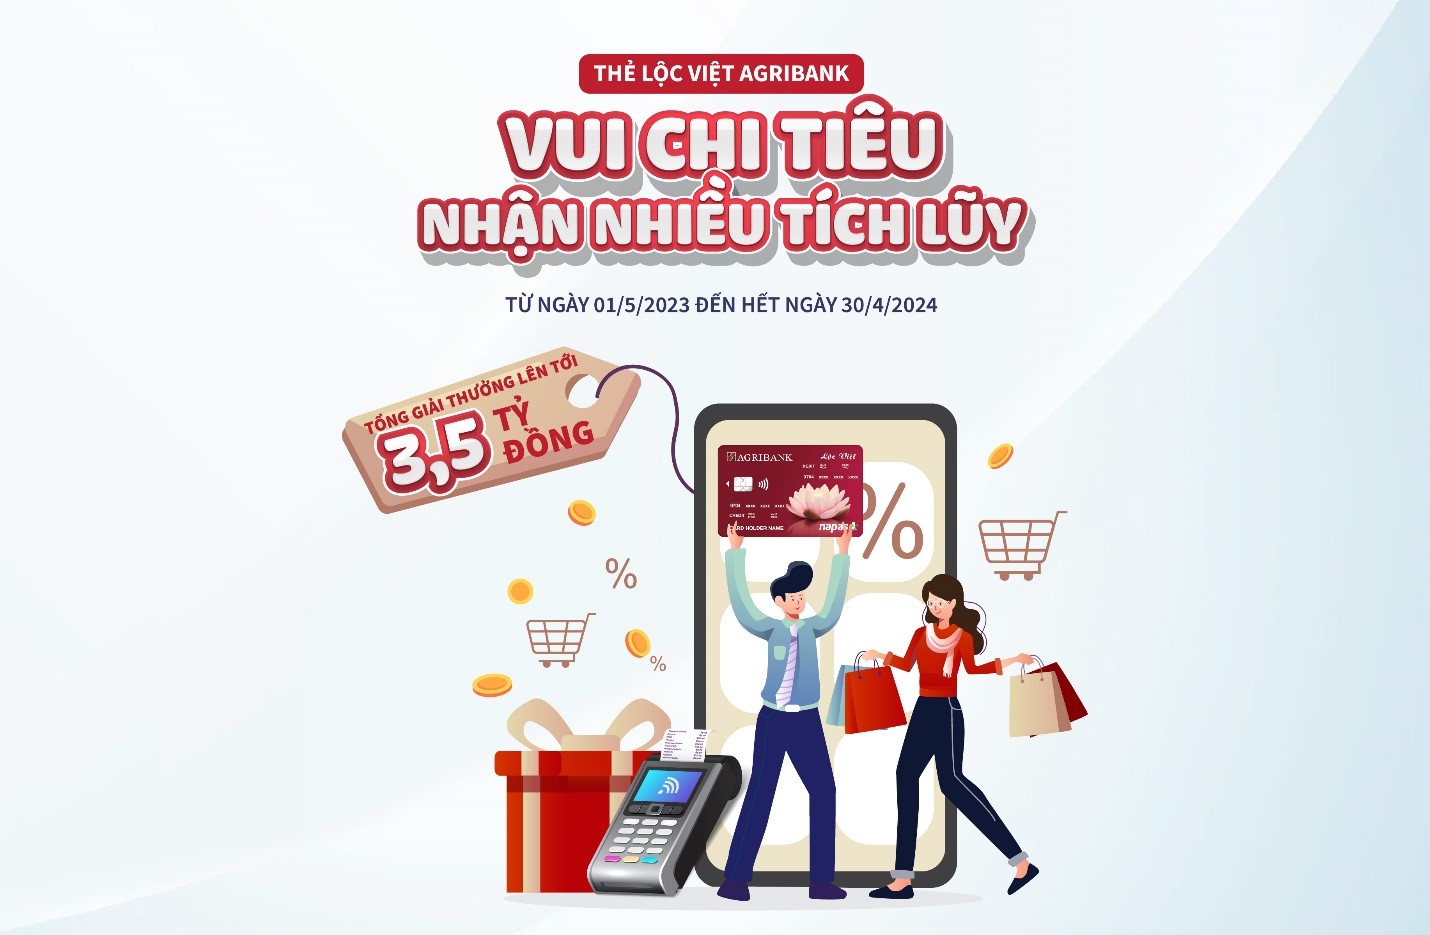 Chào hè rộn rã - Hoàn tiền cực đã với thẻ tín dụng Lộc Việt Agribank - Ảnh 1.